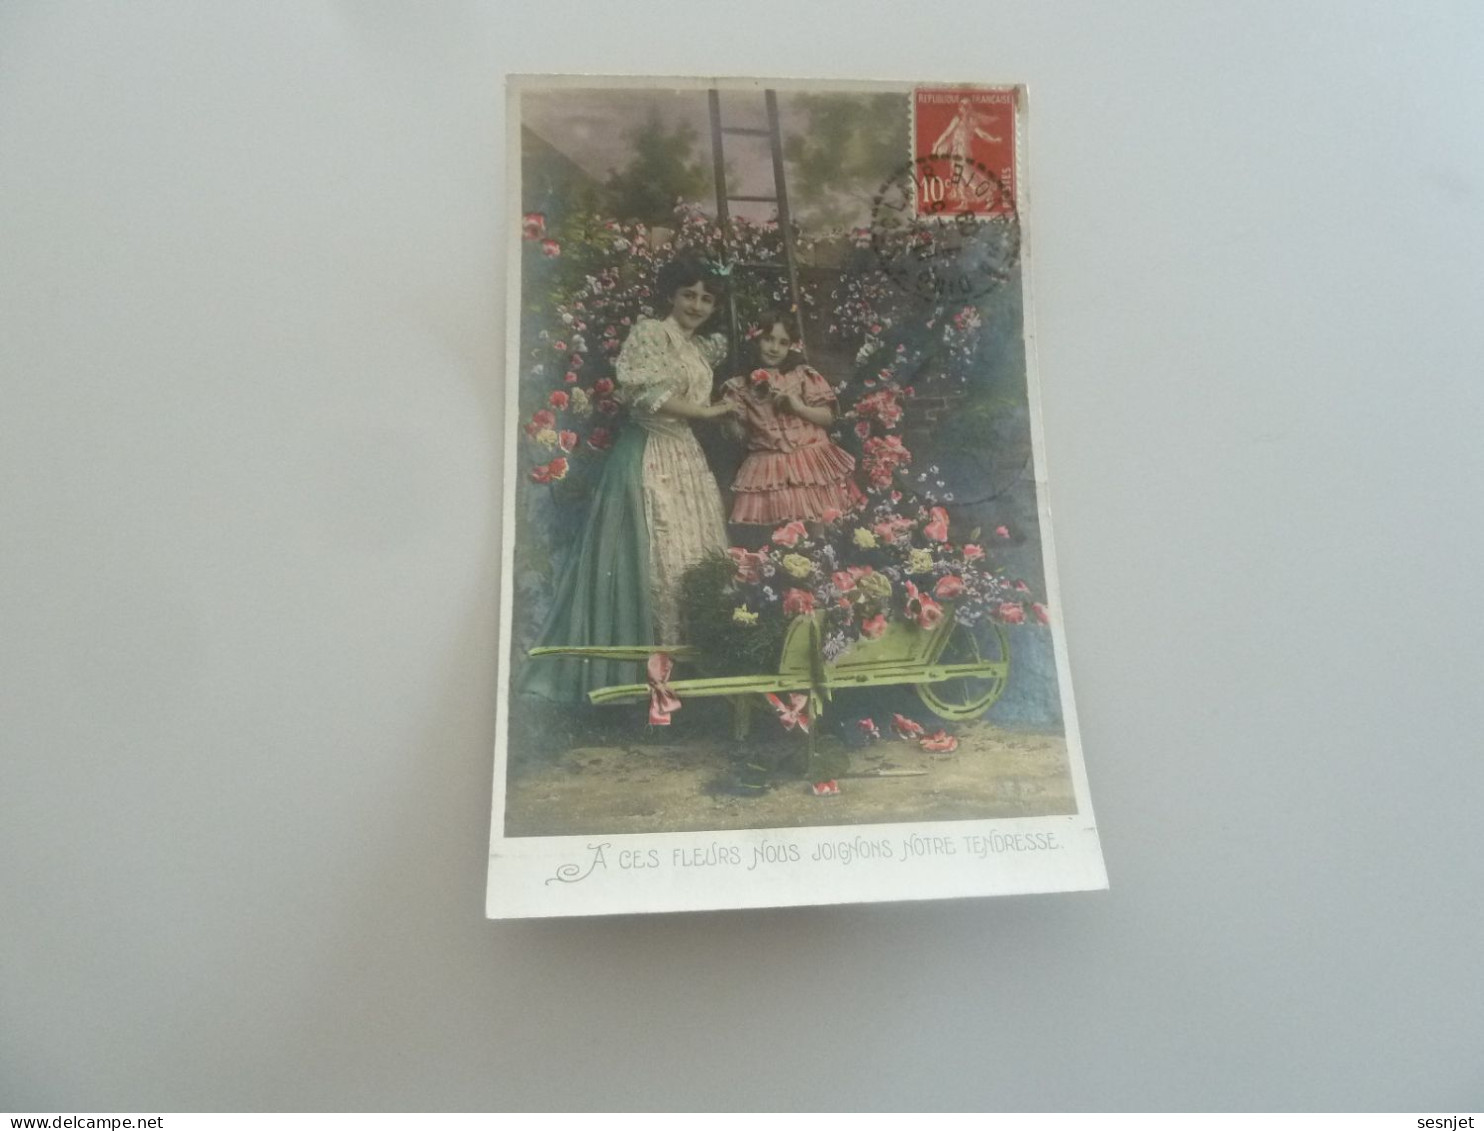 Dingy Saint-Clair - A Ces Fleurs Nous Joignons Notre Tendresse - 581 - Yt 135 - Editions A.s - Année 1909 - - Mother's Day